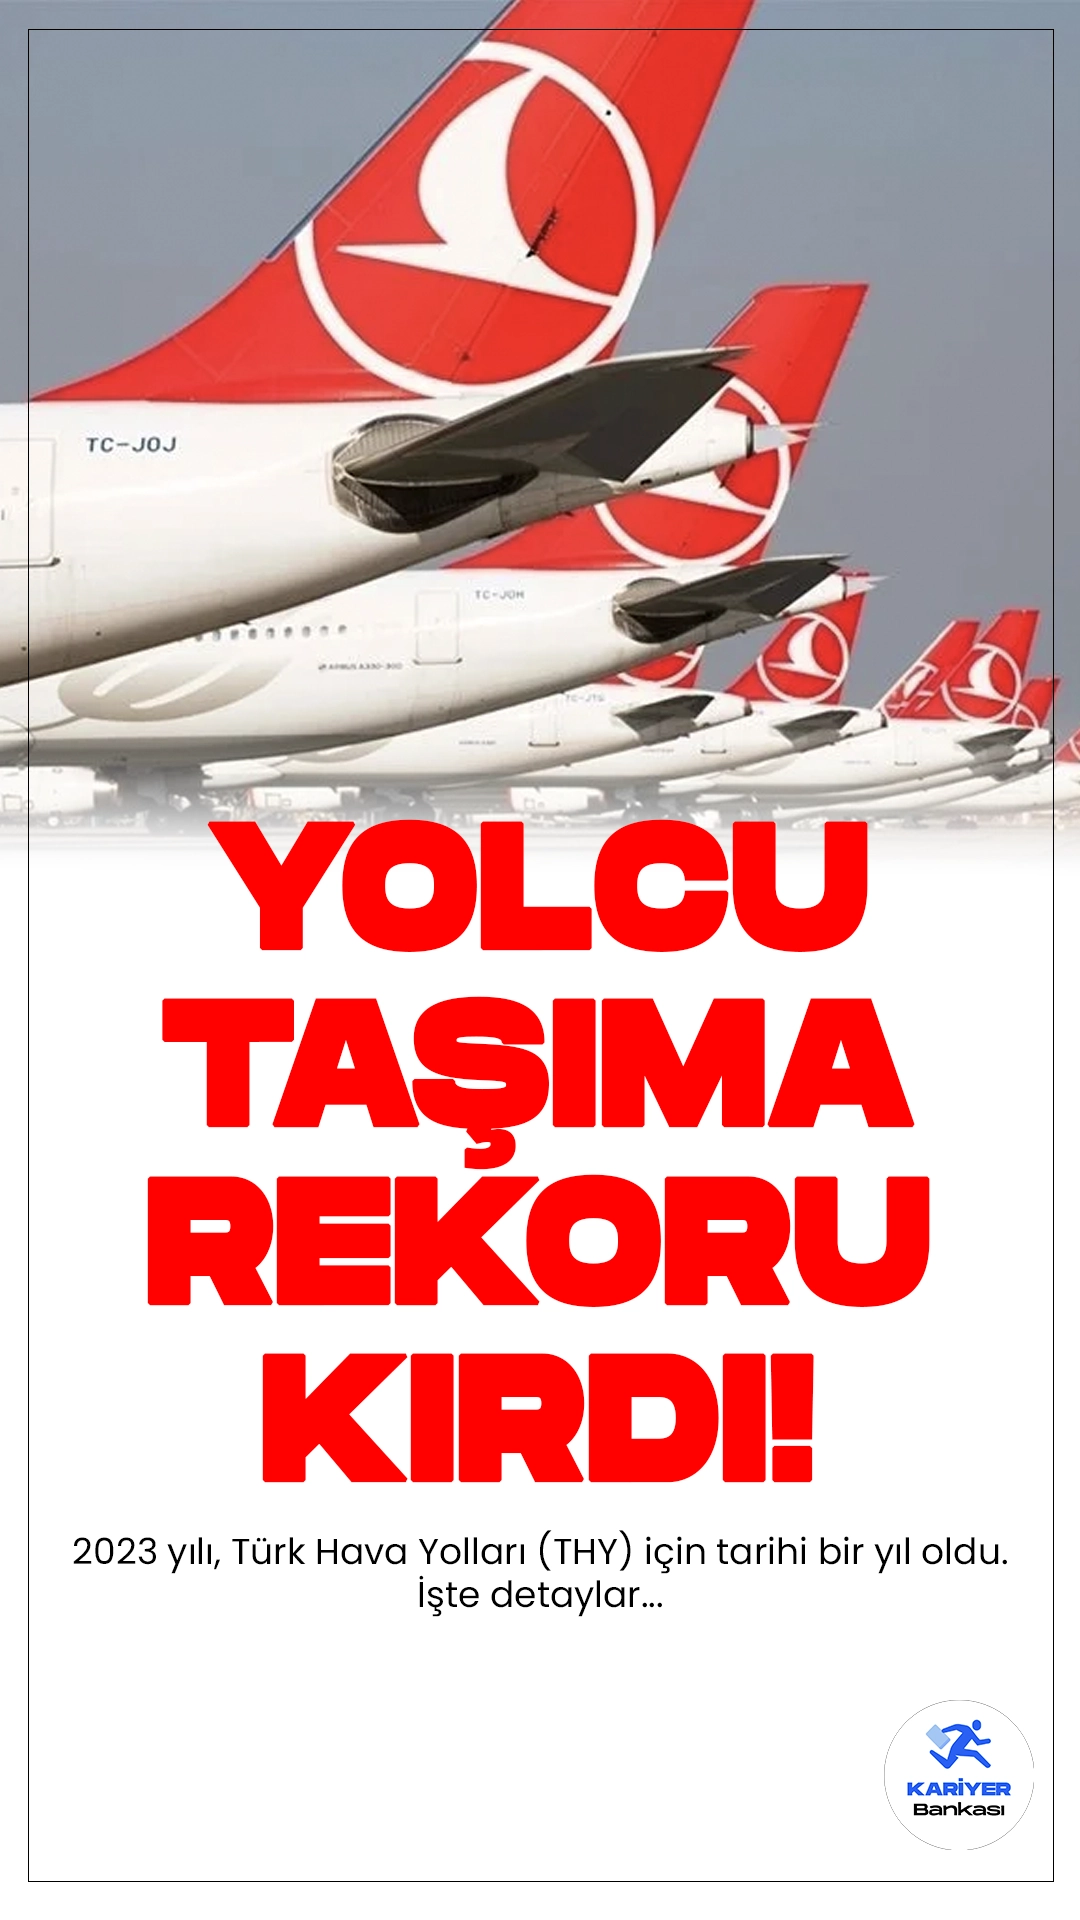 2023 yılı, Türk Hava Yolları (THY) için tarihi bir yıl oldu. 2023 yılında rekorlar kıran THY'nin çalışmalarına dair detaylar bu haberimizde.